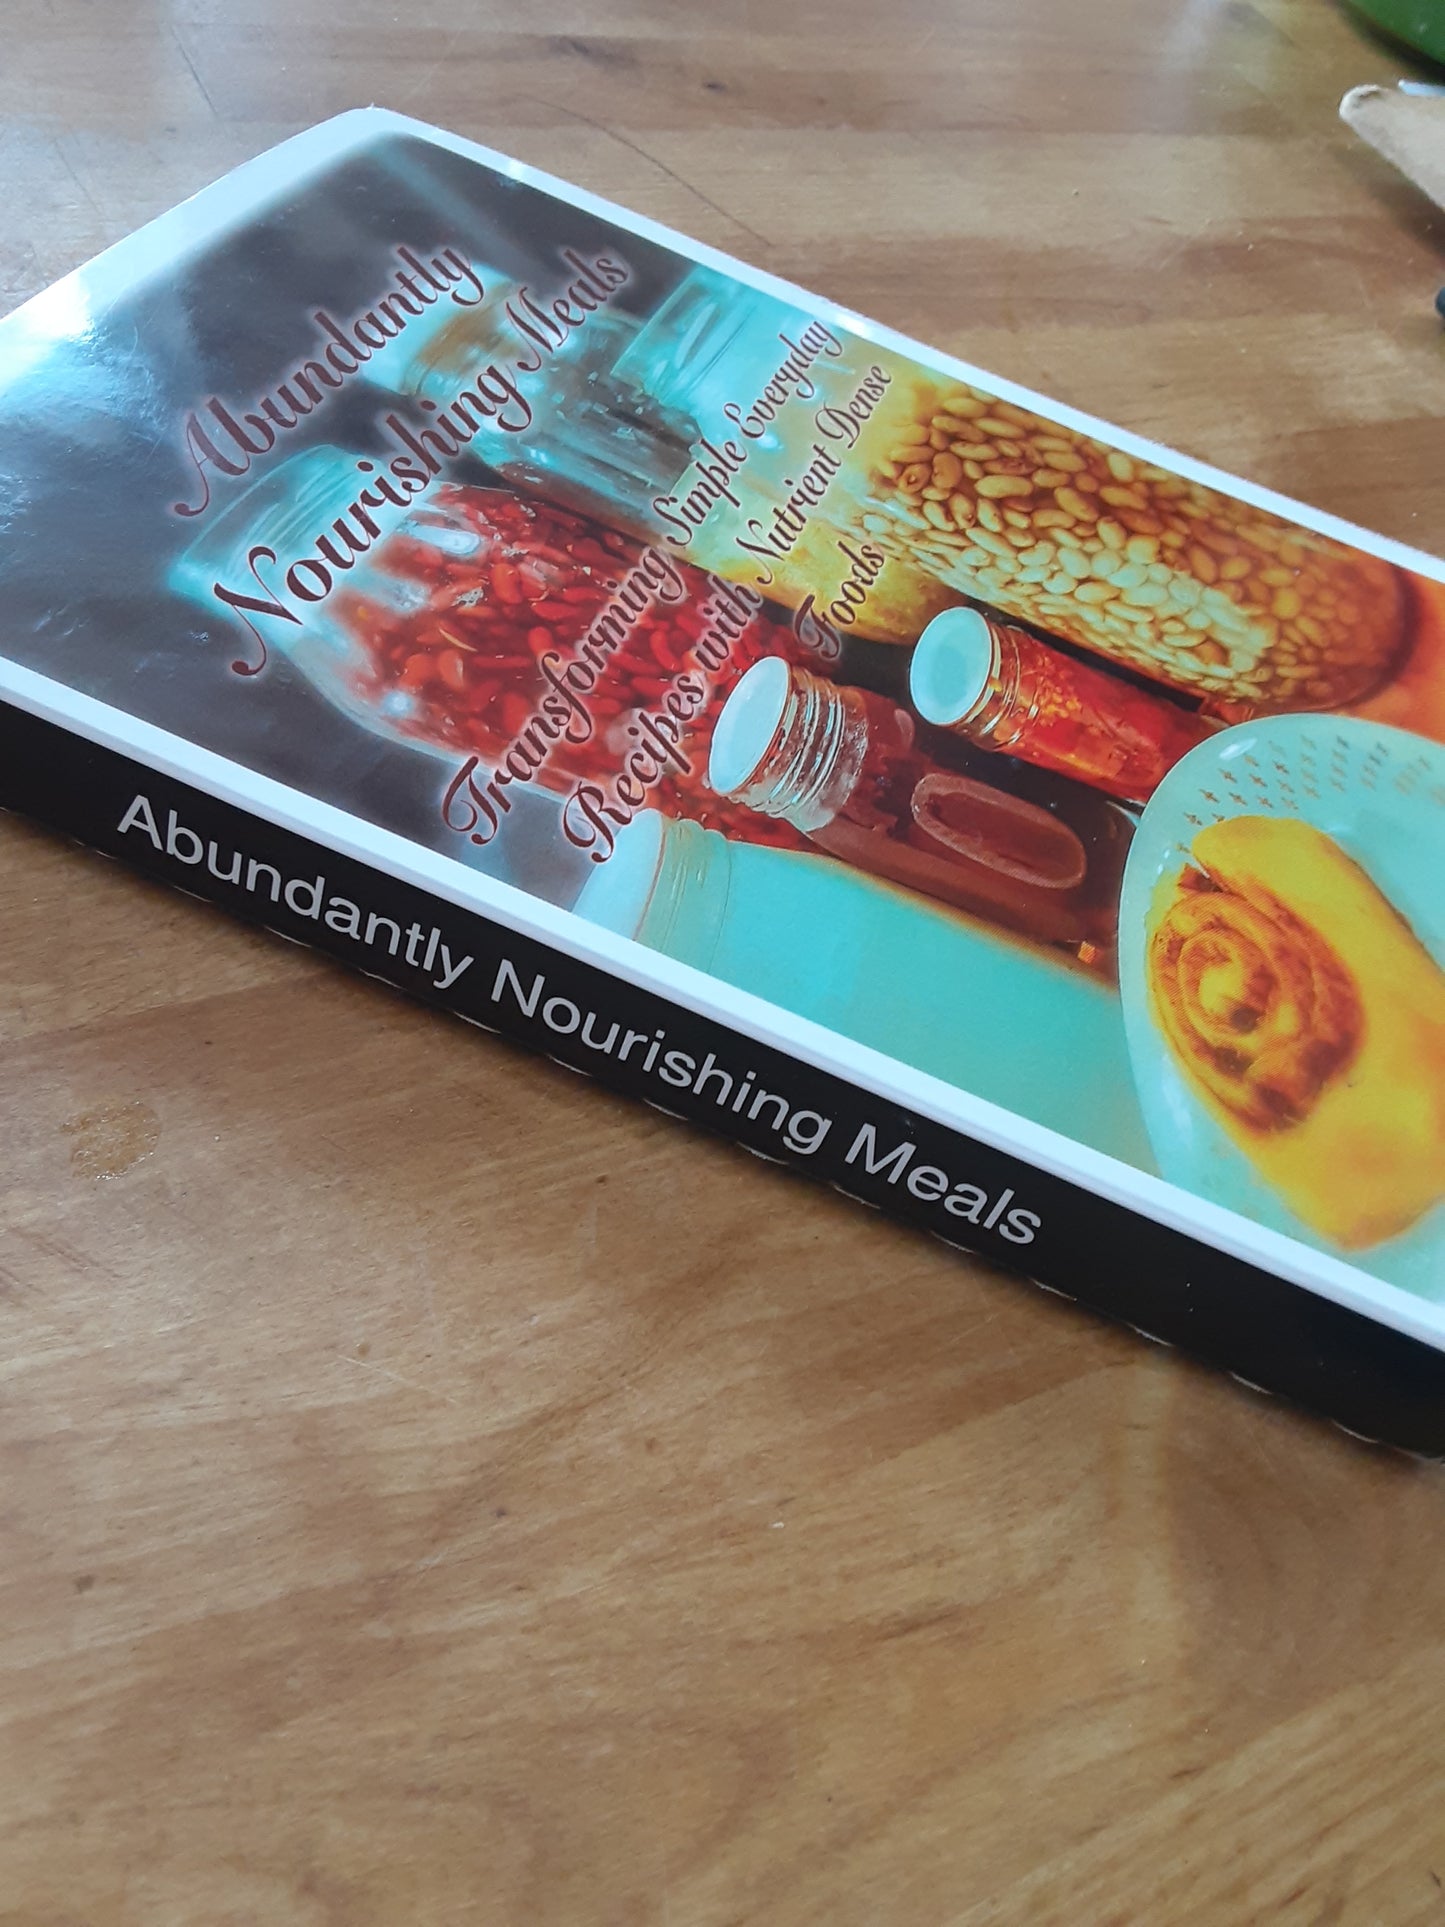 Abundantly Nourishing Meals Cookbook